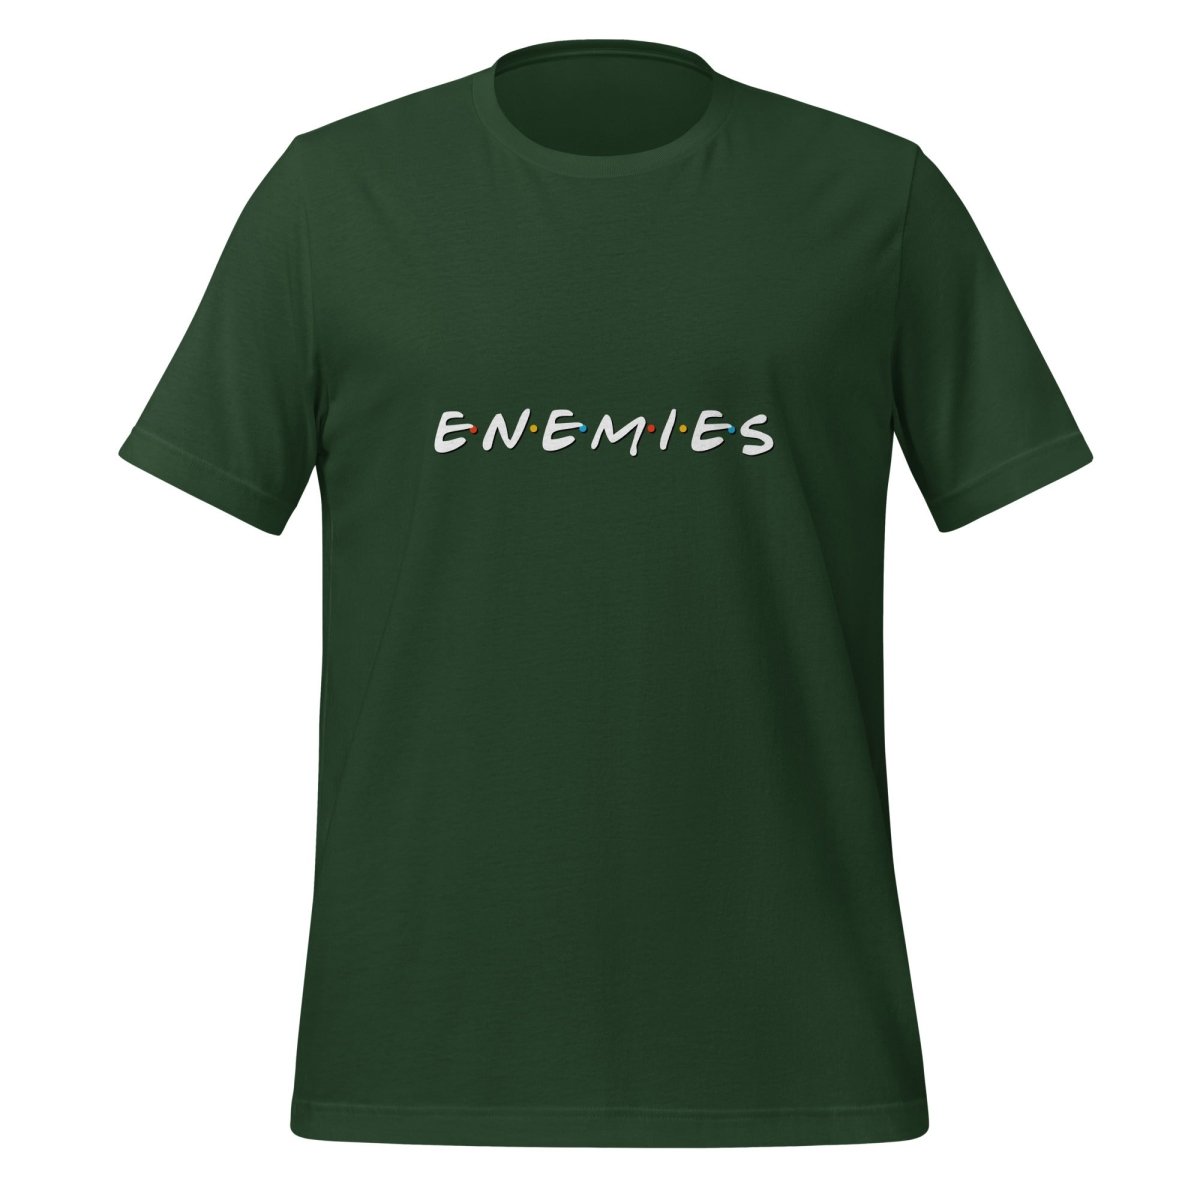 Enemies T - Shirt (unisex) - Forest - AI Store